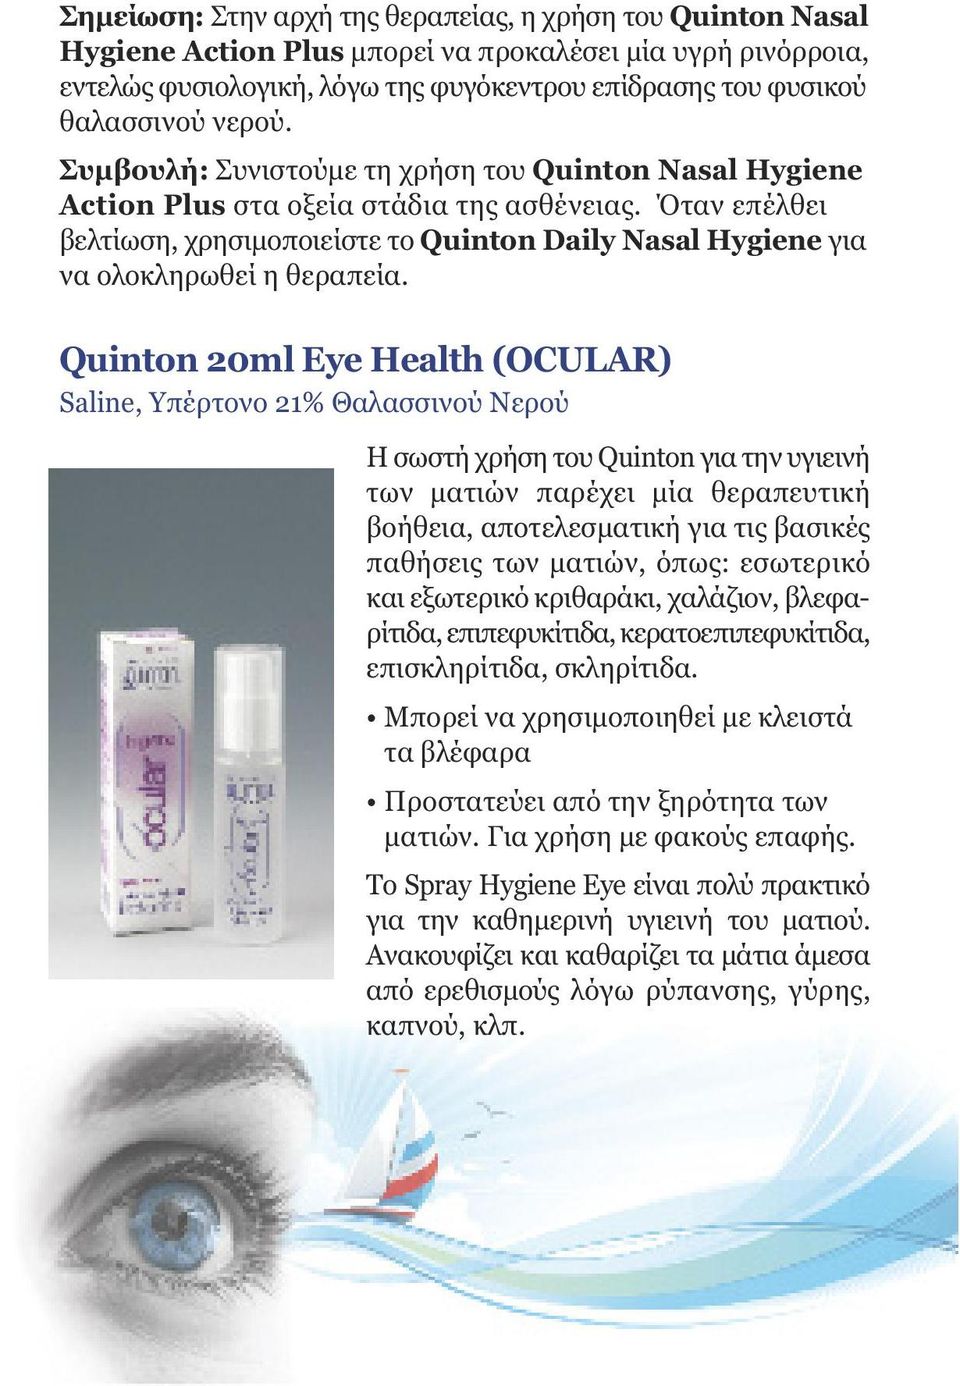 Όταν επέλθει βελτίωση, χρησιµοποιείστε το Quinton Daily Nasal Hygiene για να ολοκληρωθεί η θεραπεία.